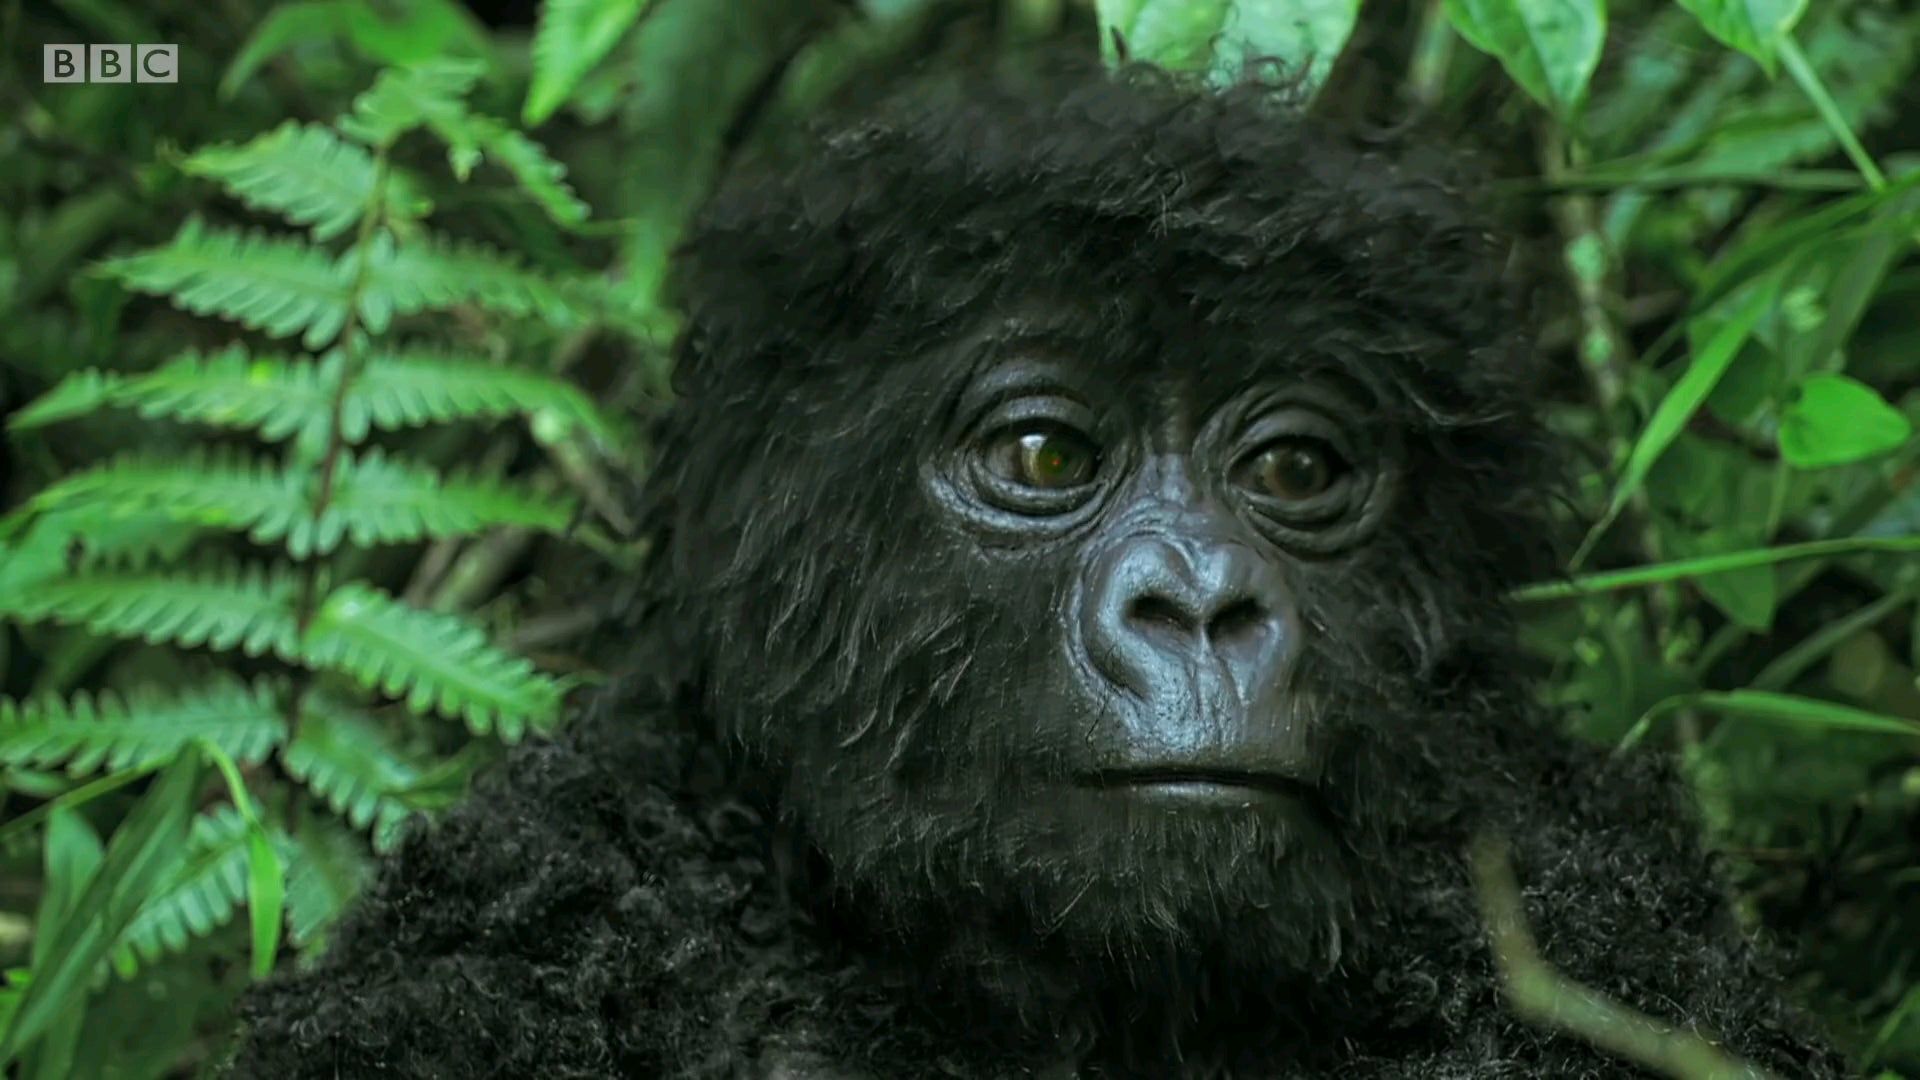 Robot spy gorilla infiltrates a wild gorilla troop